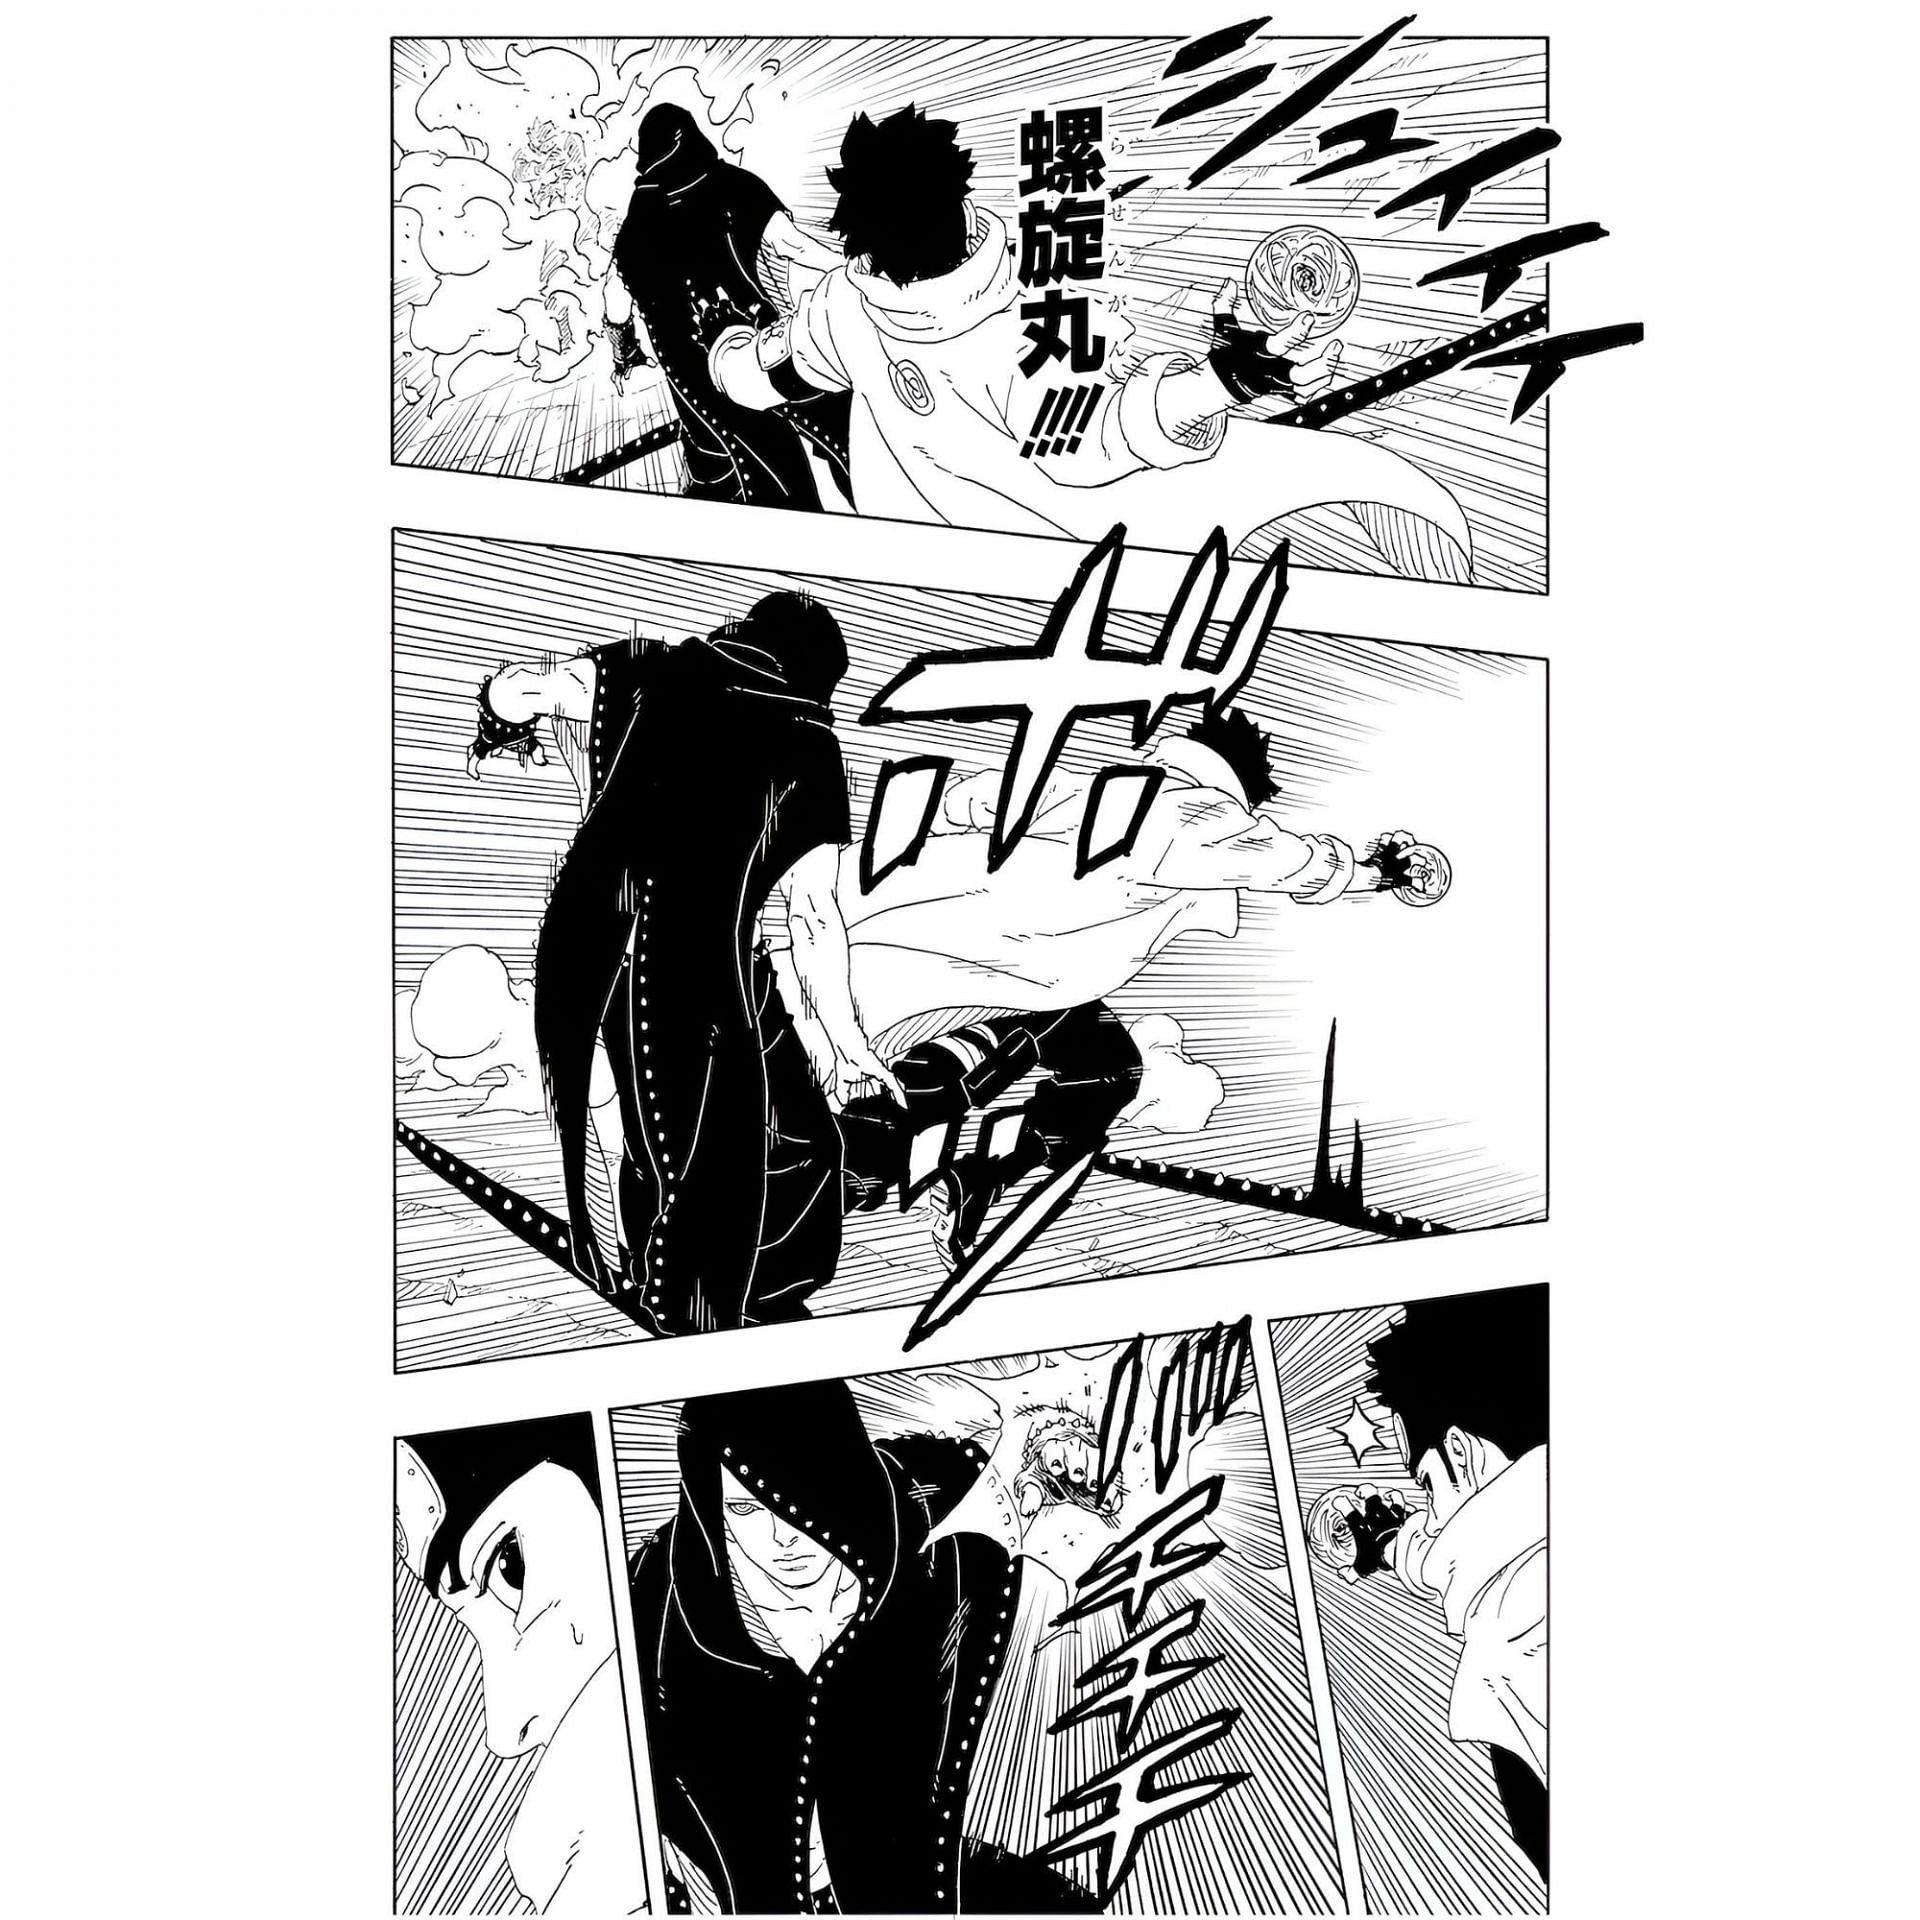 Konohamaru and Hidari as seen in the manga (Image via Shueisha)